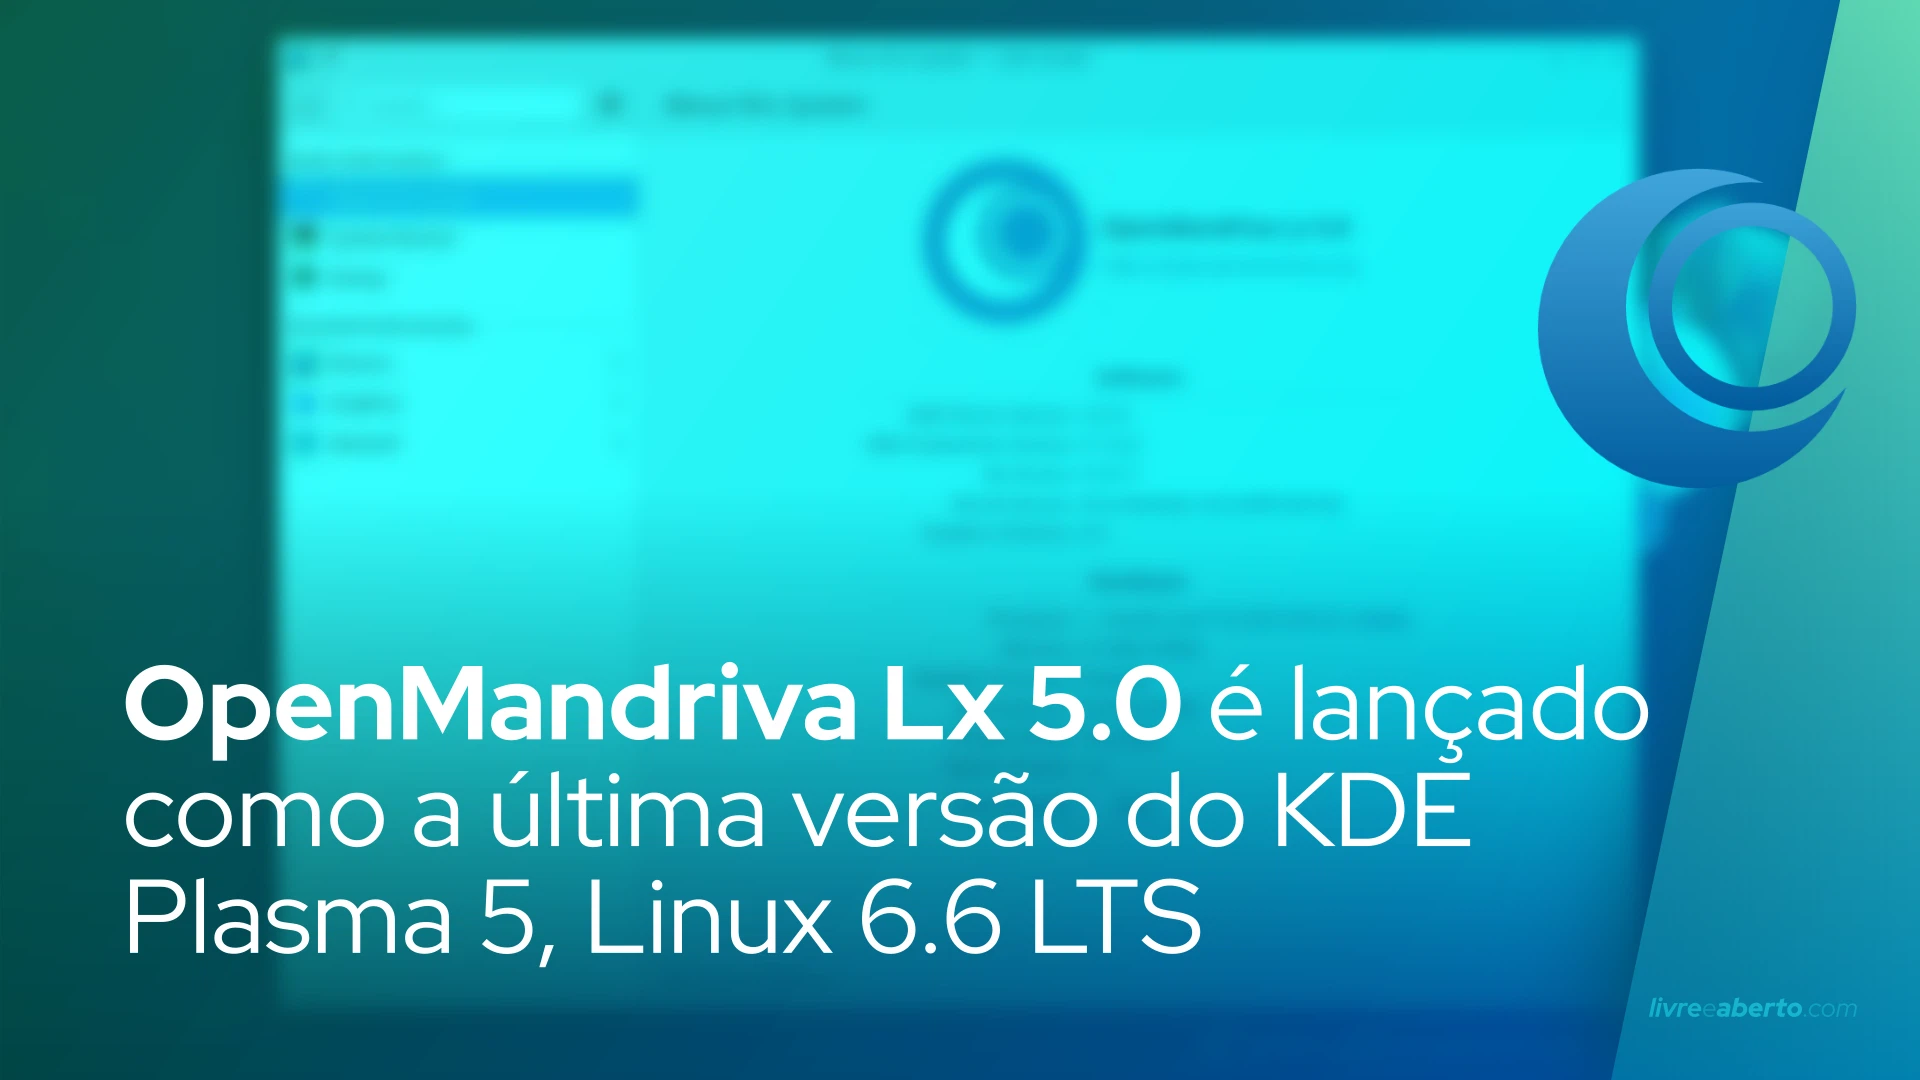 OpenMandriva Lx 5.0 é lançado como a última versão do KDE Plasma 5, alimentado pelo Linux 6.6 LTS